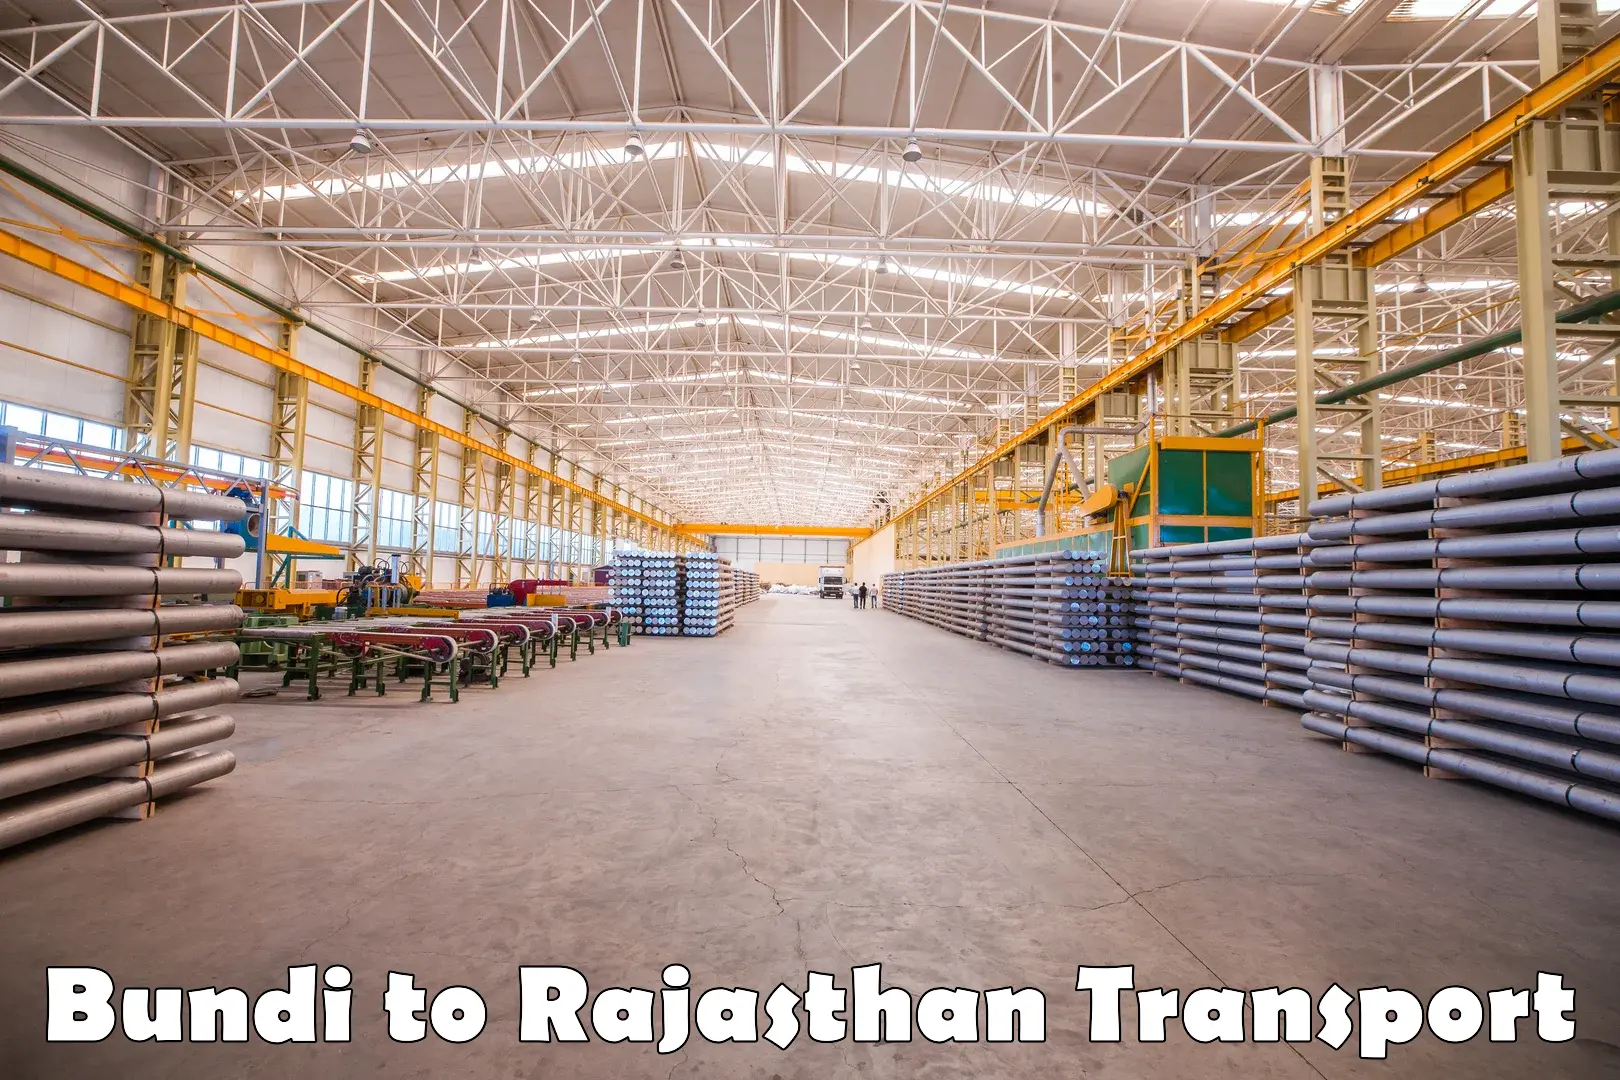 Express transport services Bundi to Rajasthan